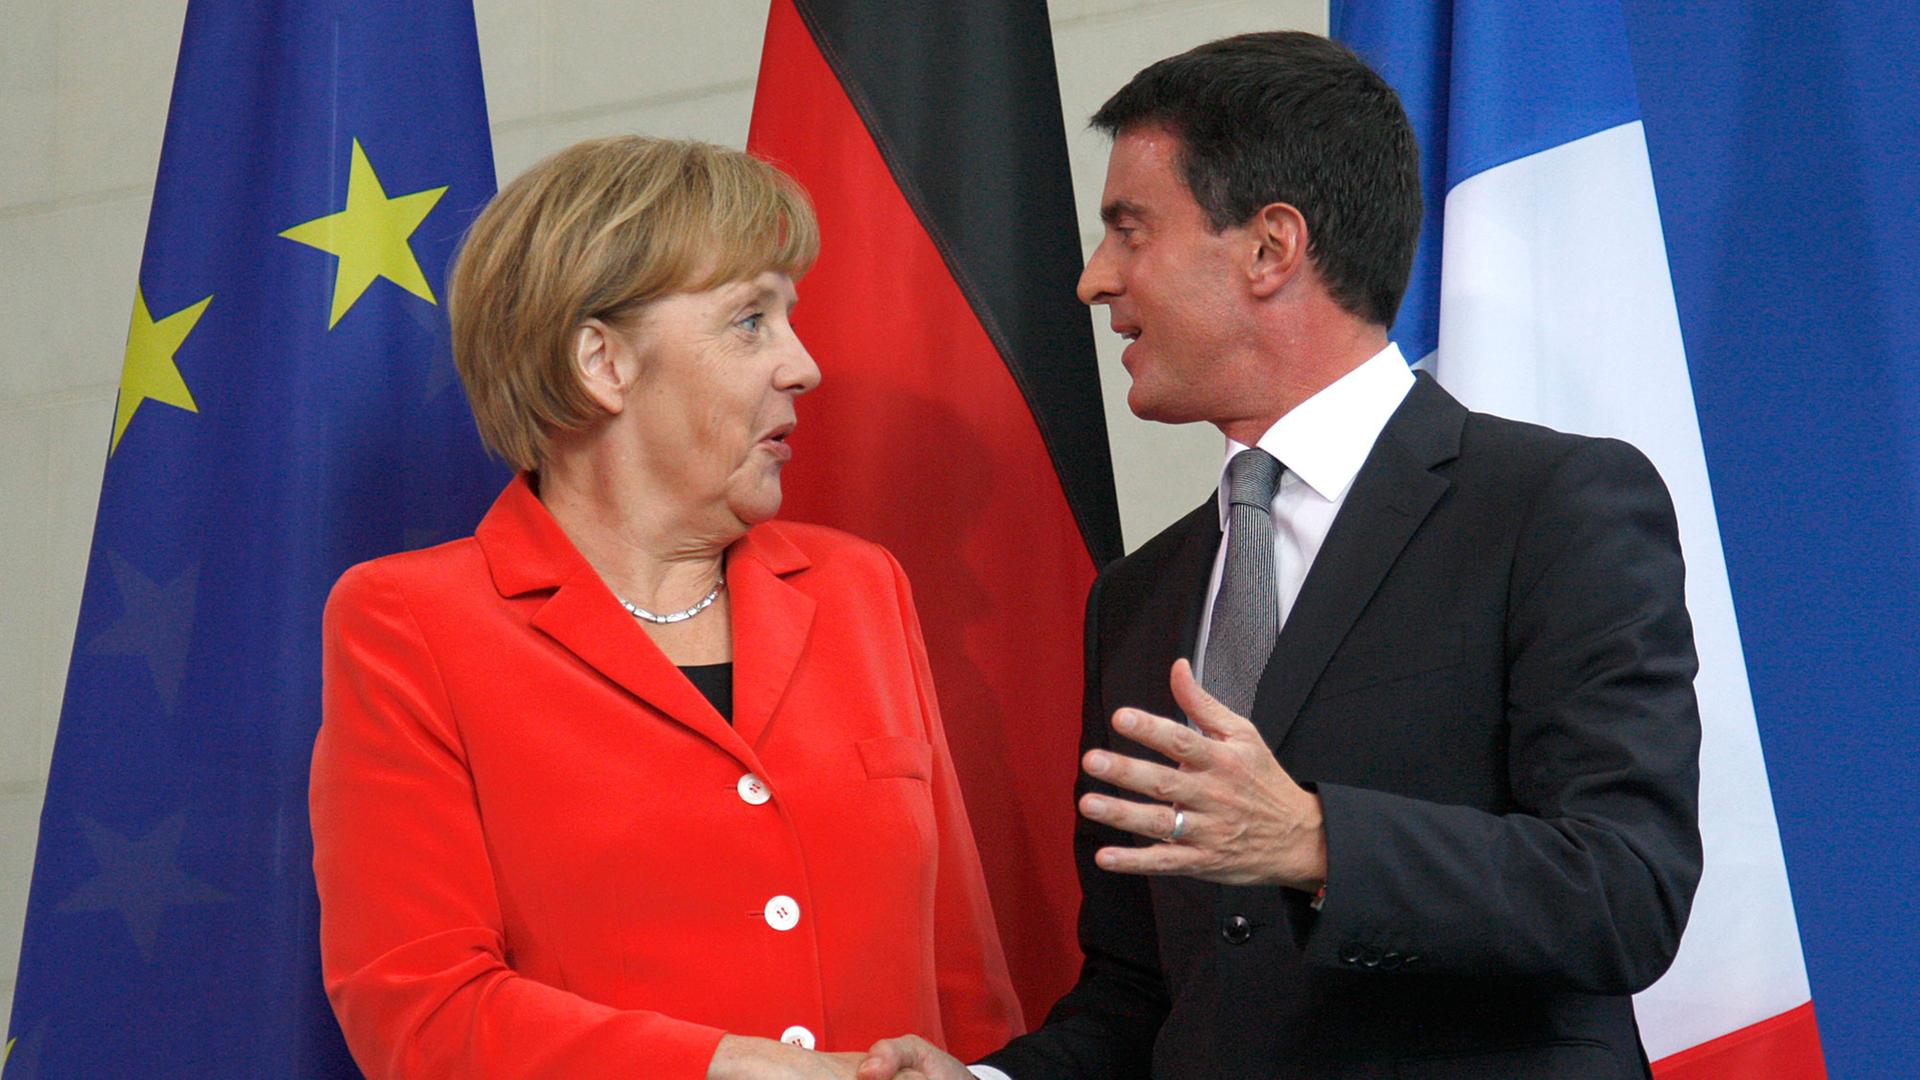 Frankreichs Premierminister Manuel Valls (r.) und Bundeskanzlerin Angela Merkel schütteln die Hände nach einer gemeinsamen Pressekonferenz in Berlin am 22.09.2014.